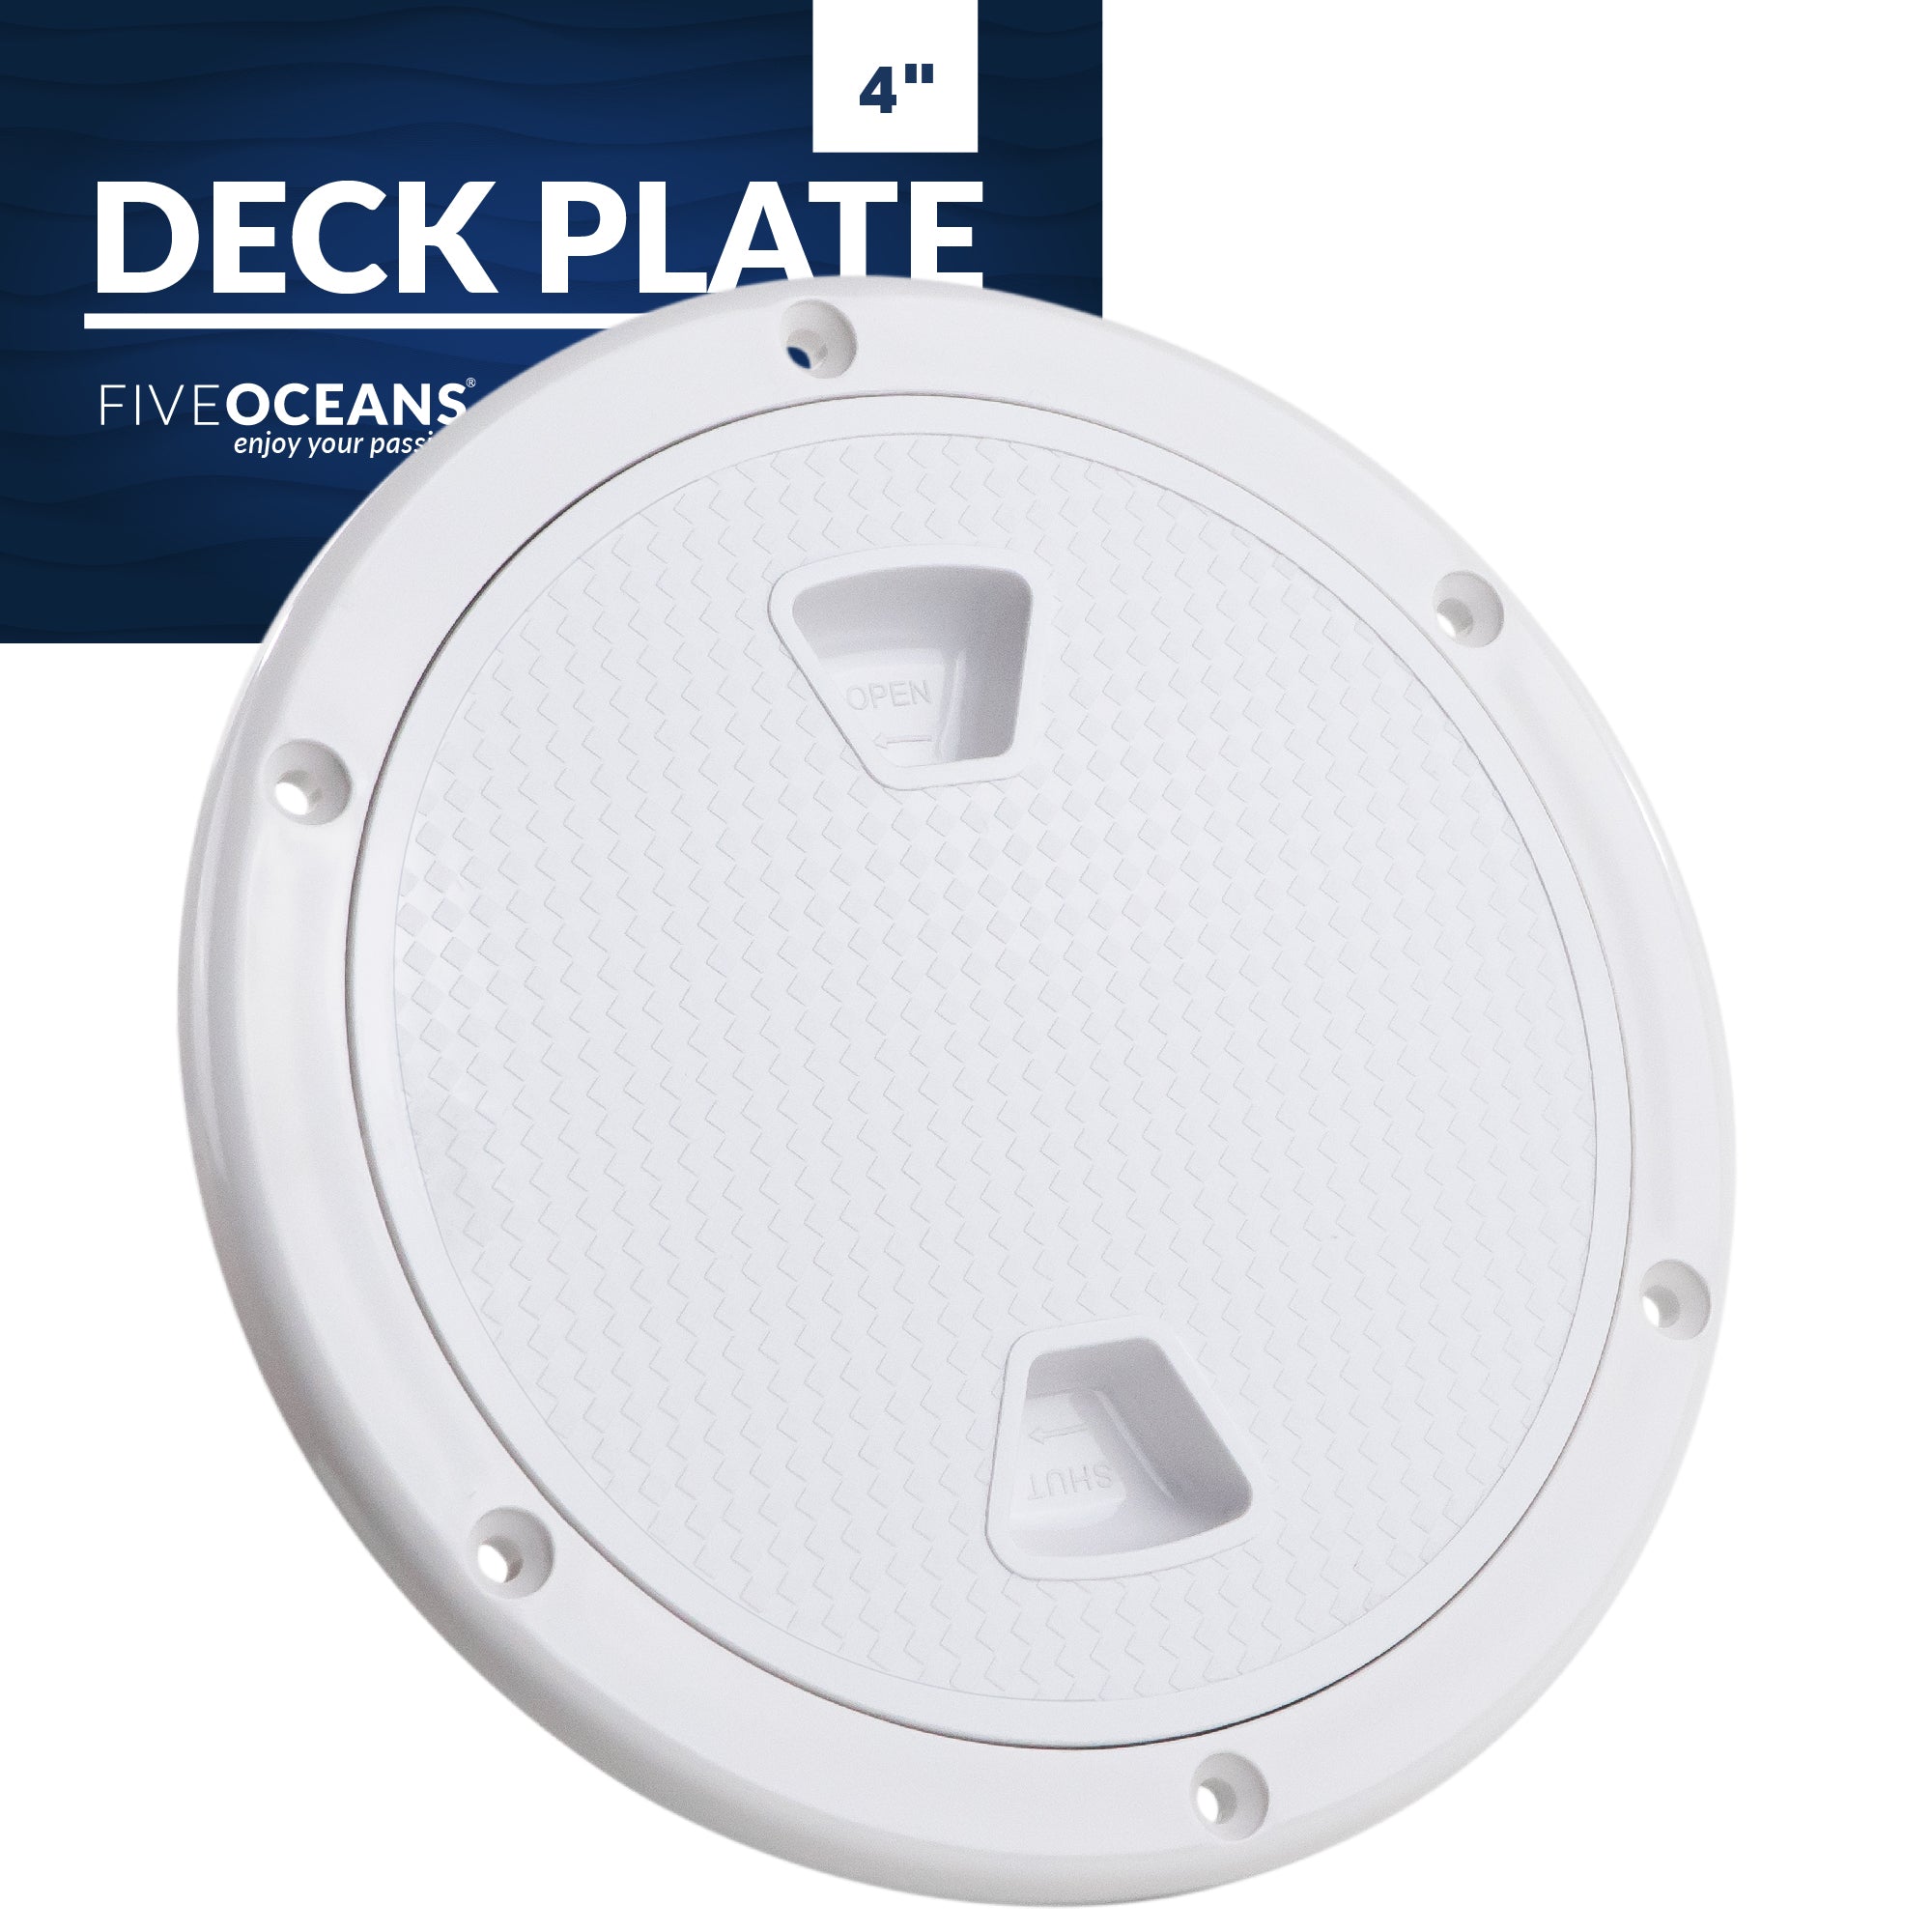 4" Deck Plate, Round Screw-in, Non-skid, White - Premium Series - FO4230